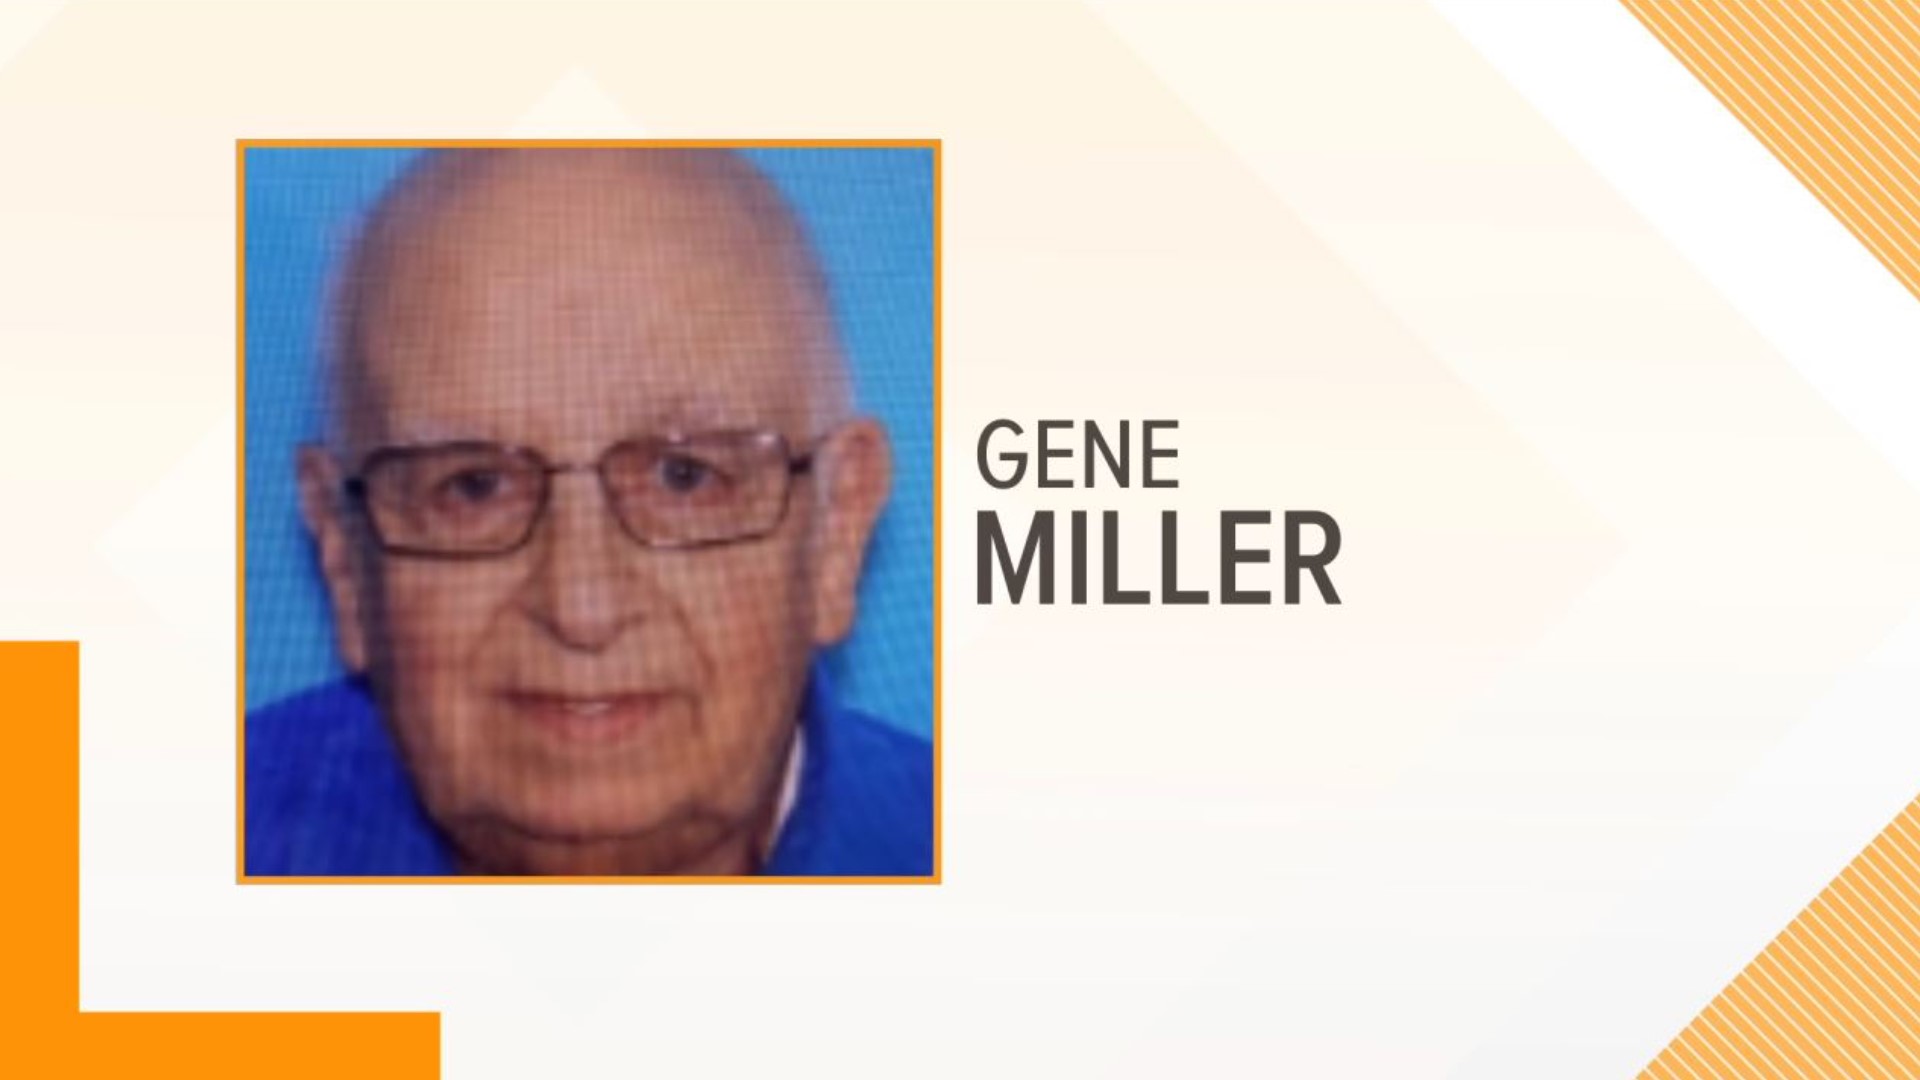 Gene Miller was found in Bradford County.